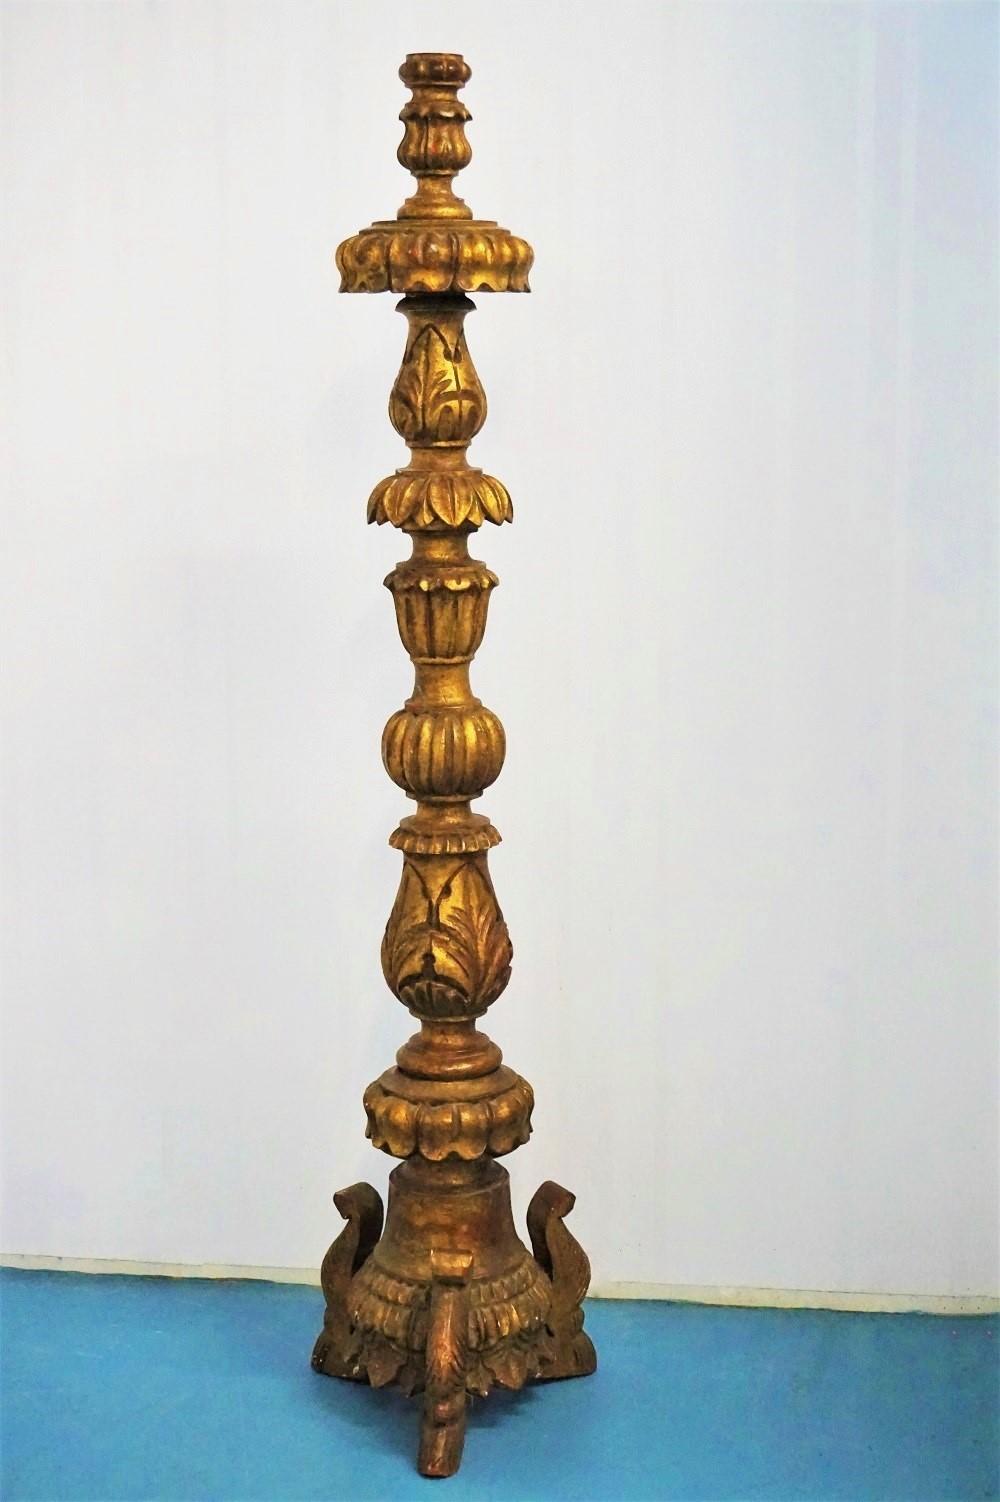 Grande torchère d'église portugaise du début du XVIIIe siècle en chêne doré, avec de profondes sculptures de feuillages, sur une base tripode.
Cette torchère peut facilement être transformée en lampadaire.
Mesures : Hauteur 54